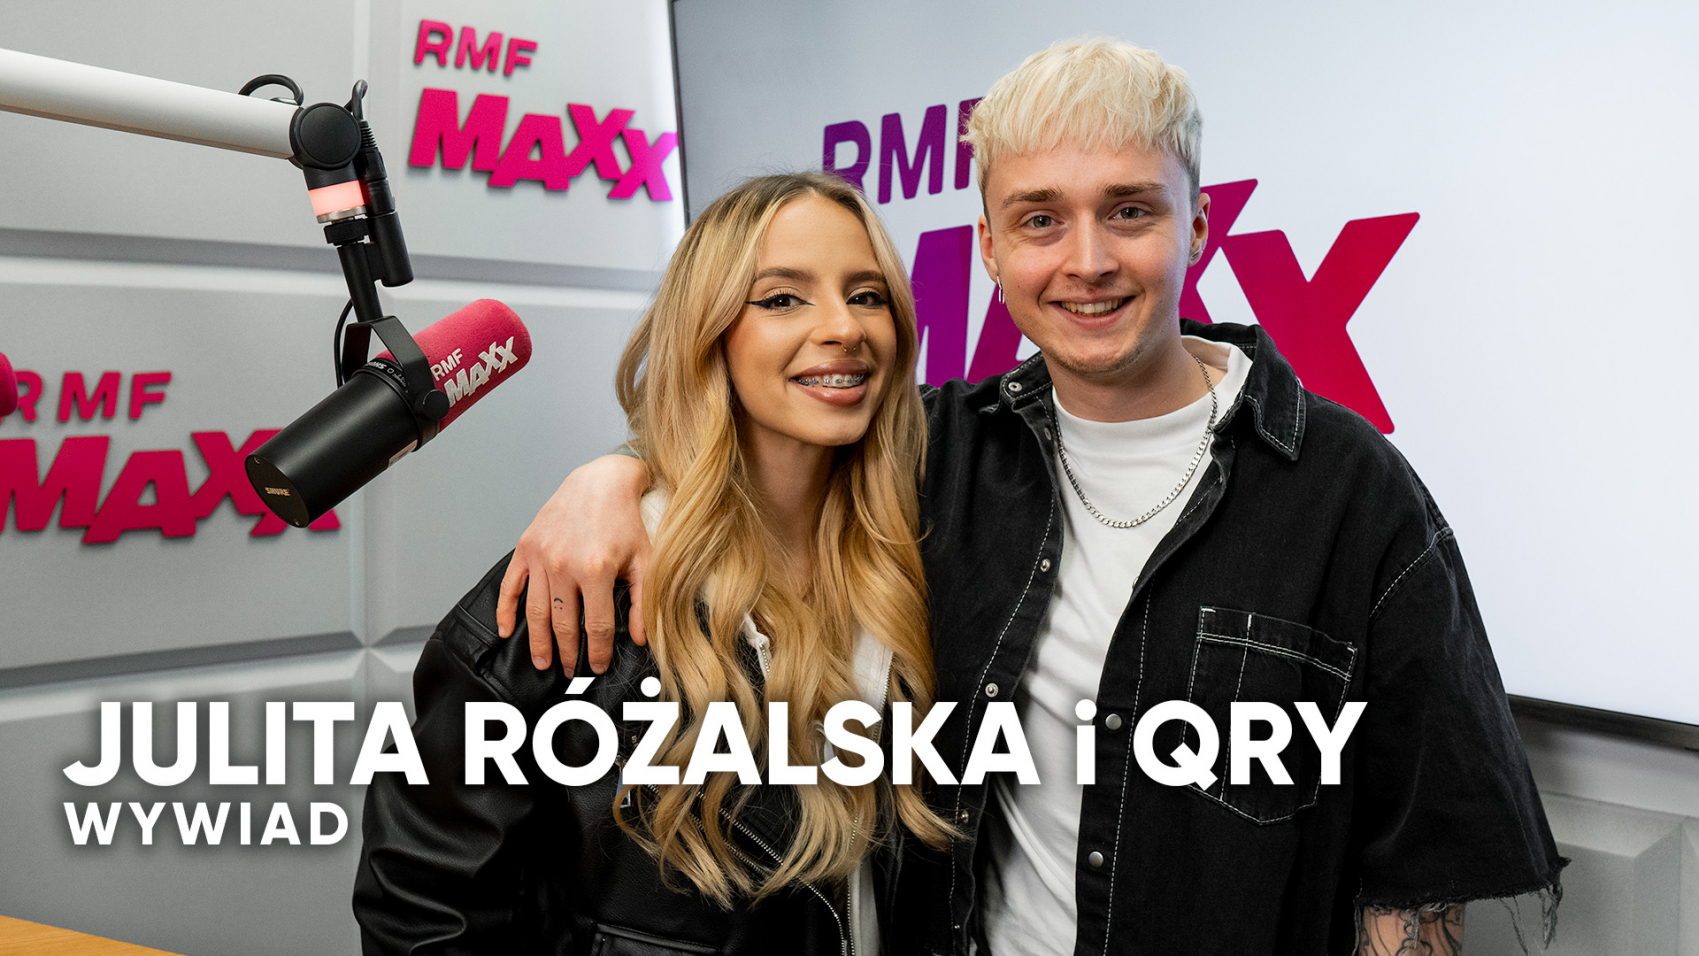 Julita Różalska i Qry w RMF MAXX